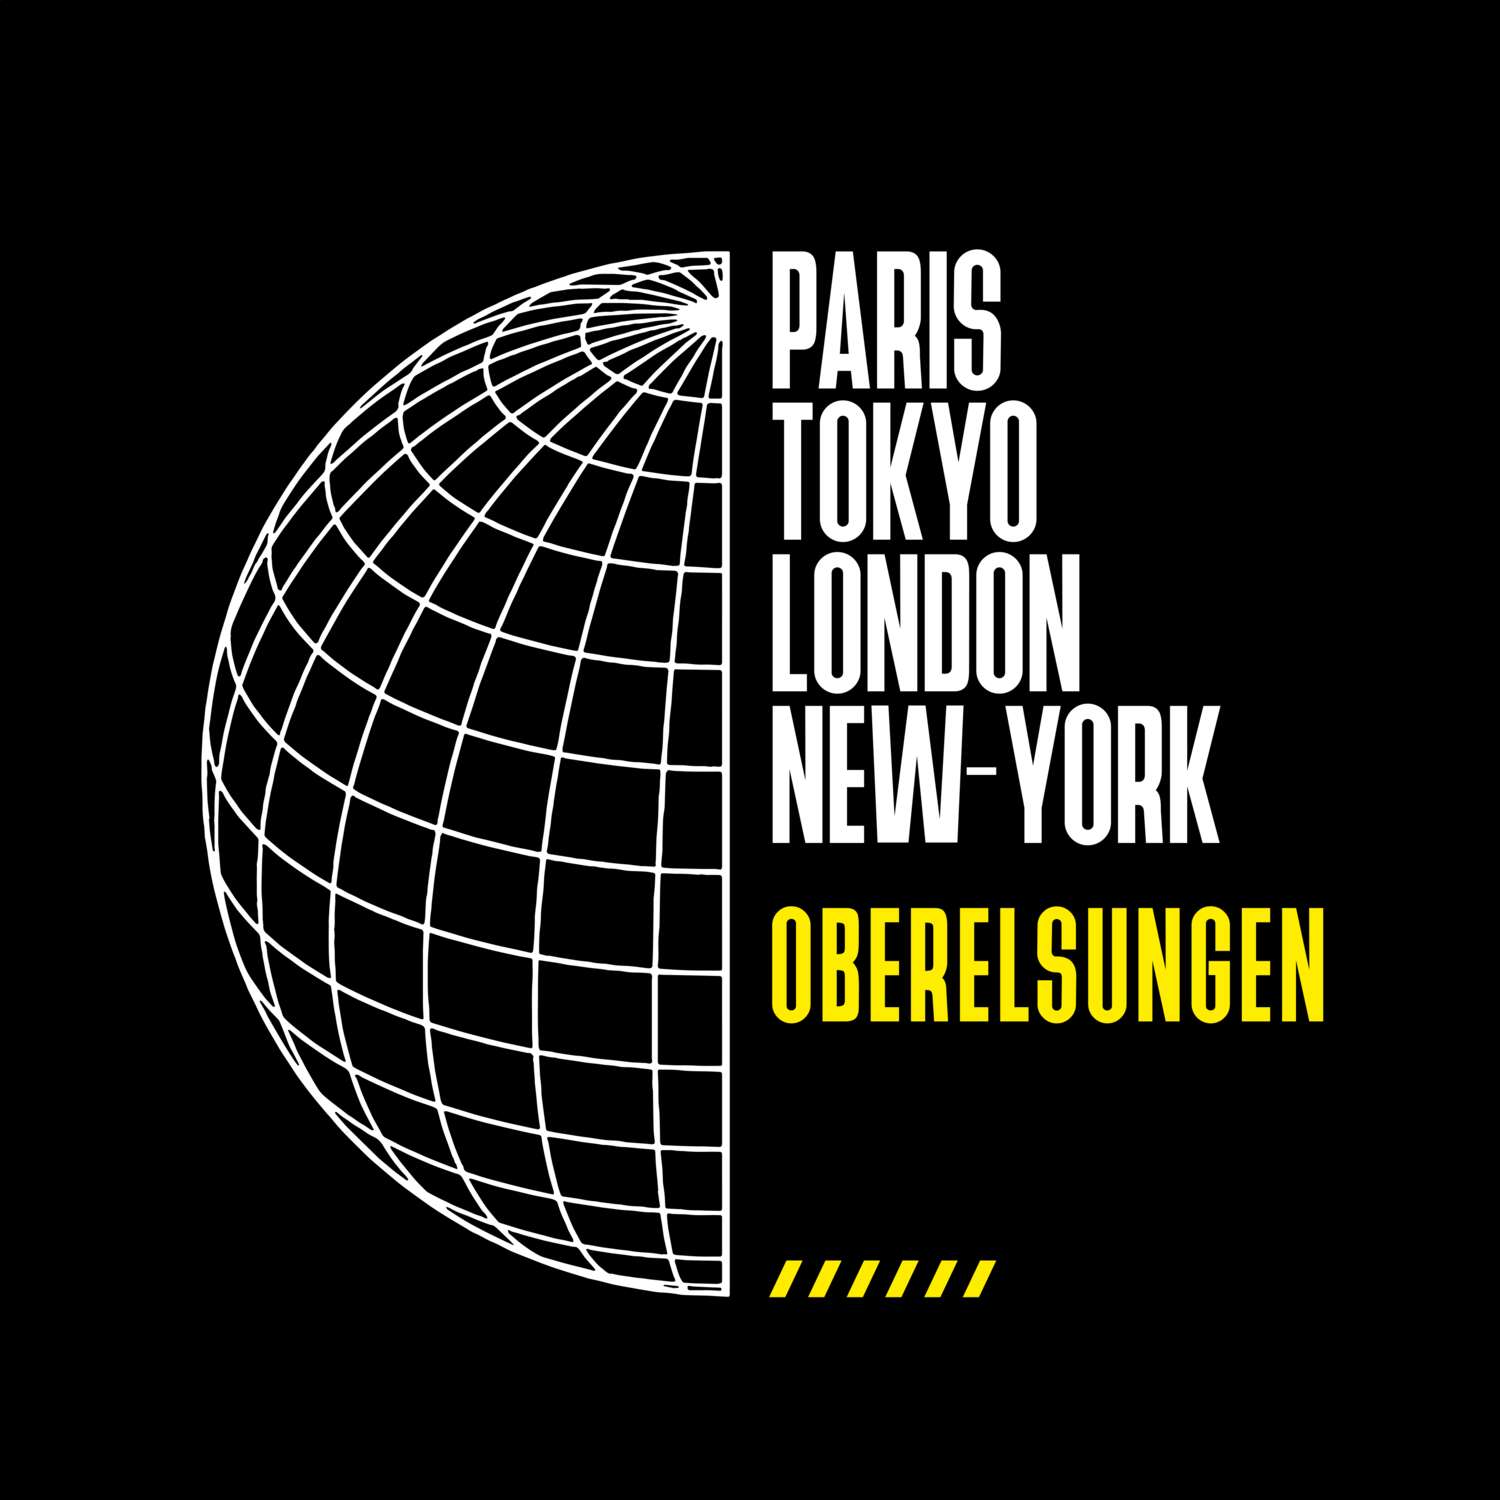 Oberelsungen T-Shirt »Paris Tokyo London«